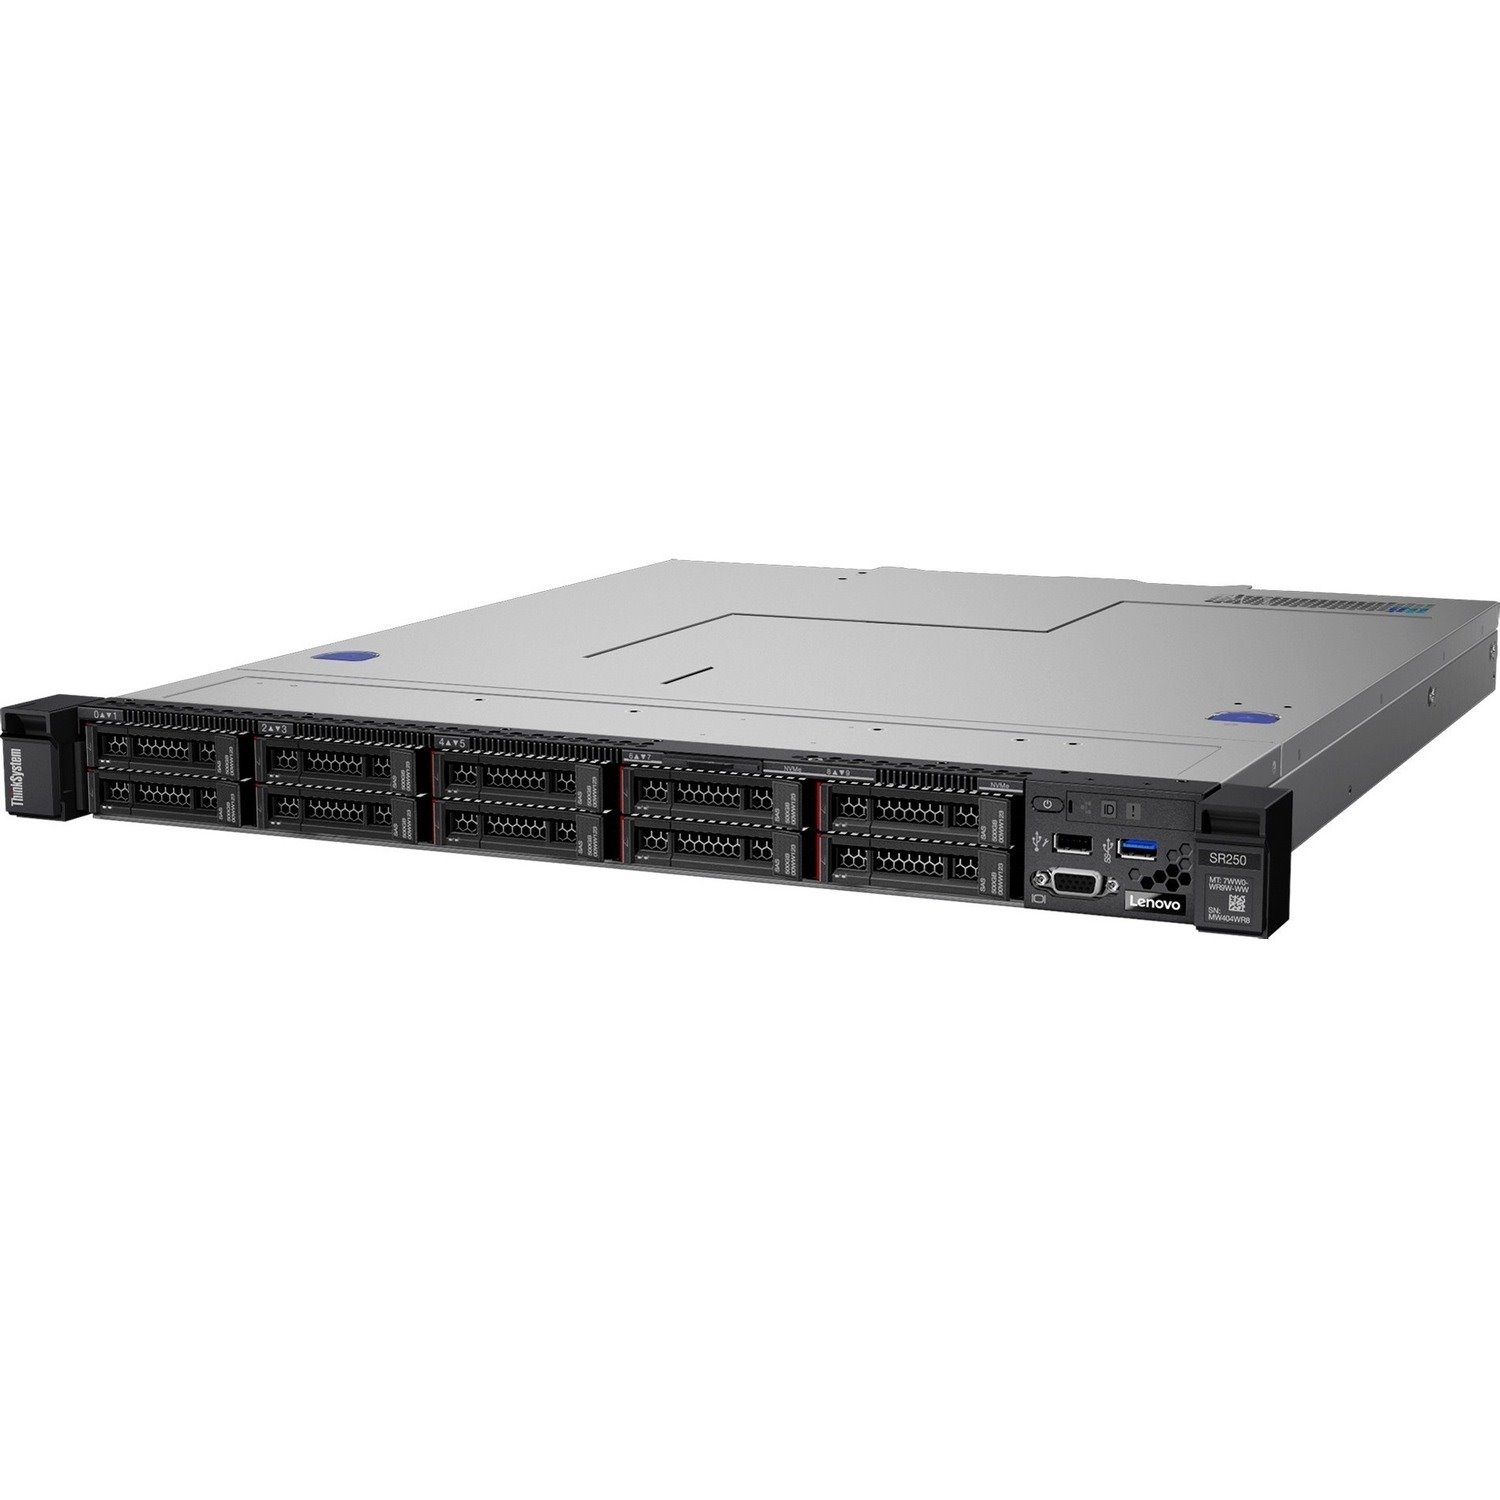 Lenovo ThinkSystem SR250 7Y51A05YAU 1U Rack Server - 1 x Intel Xeon E-2246G 3.60 GHz - 16 GB RAM - Serial ATA/600 Controller